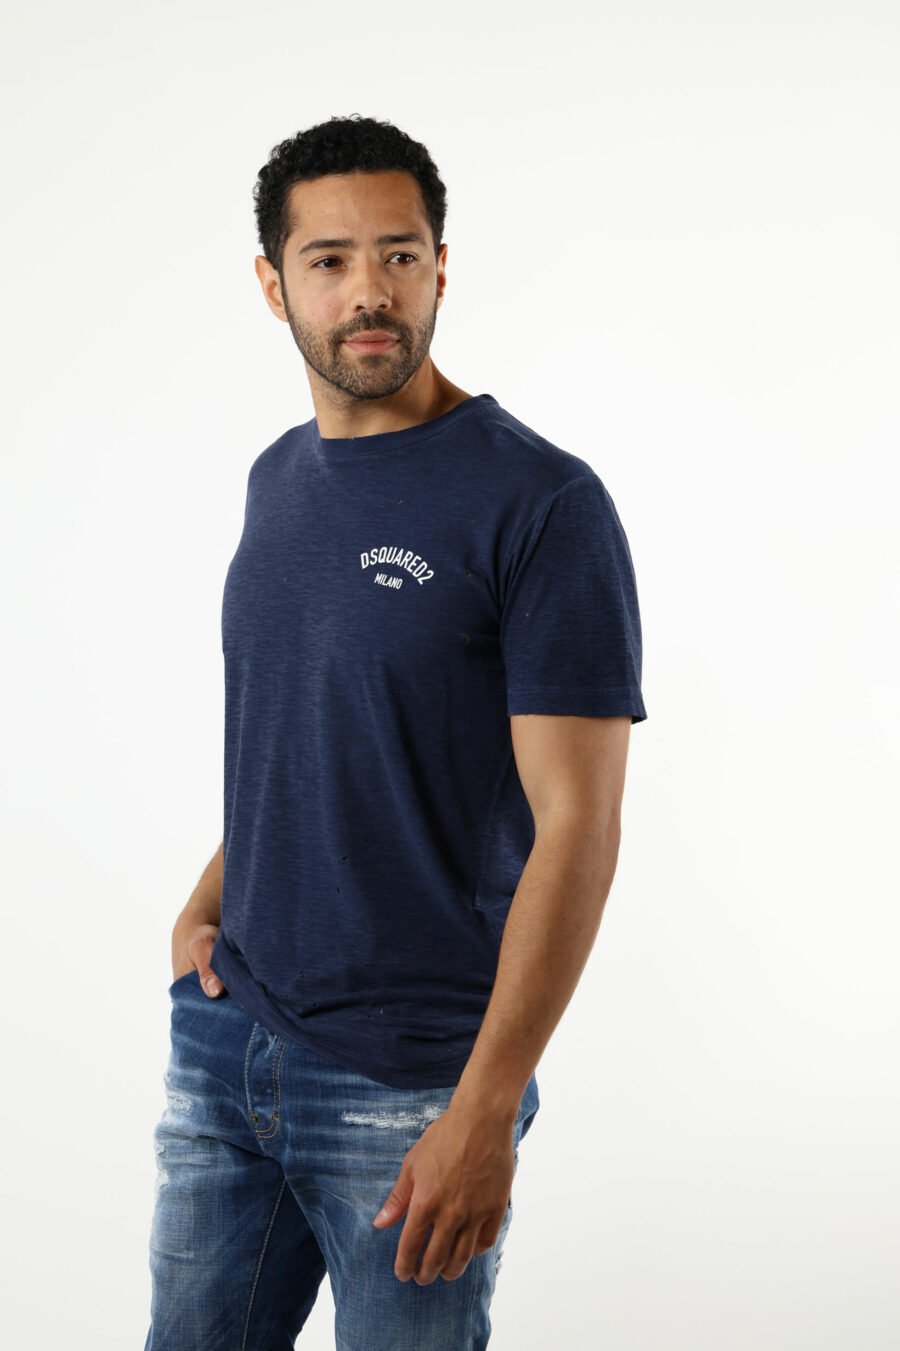 Camiseta azul oscura con minilogo "milano" - 111193